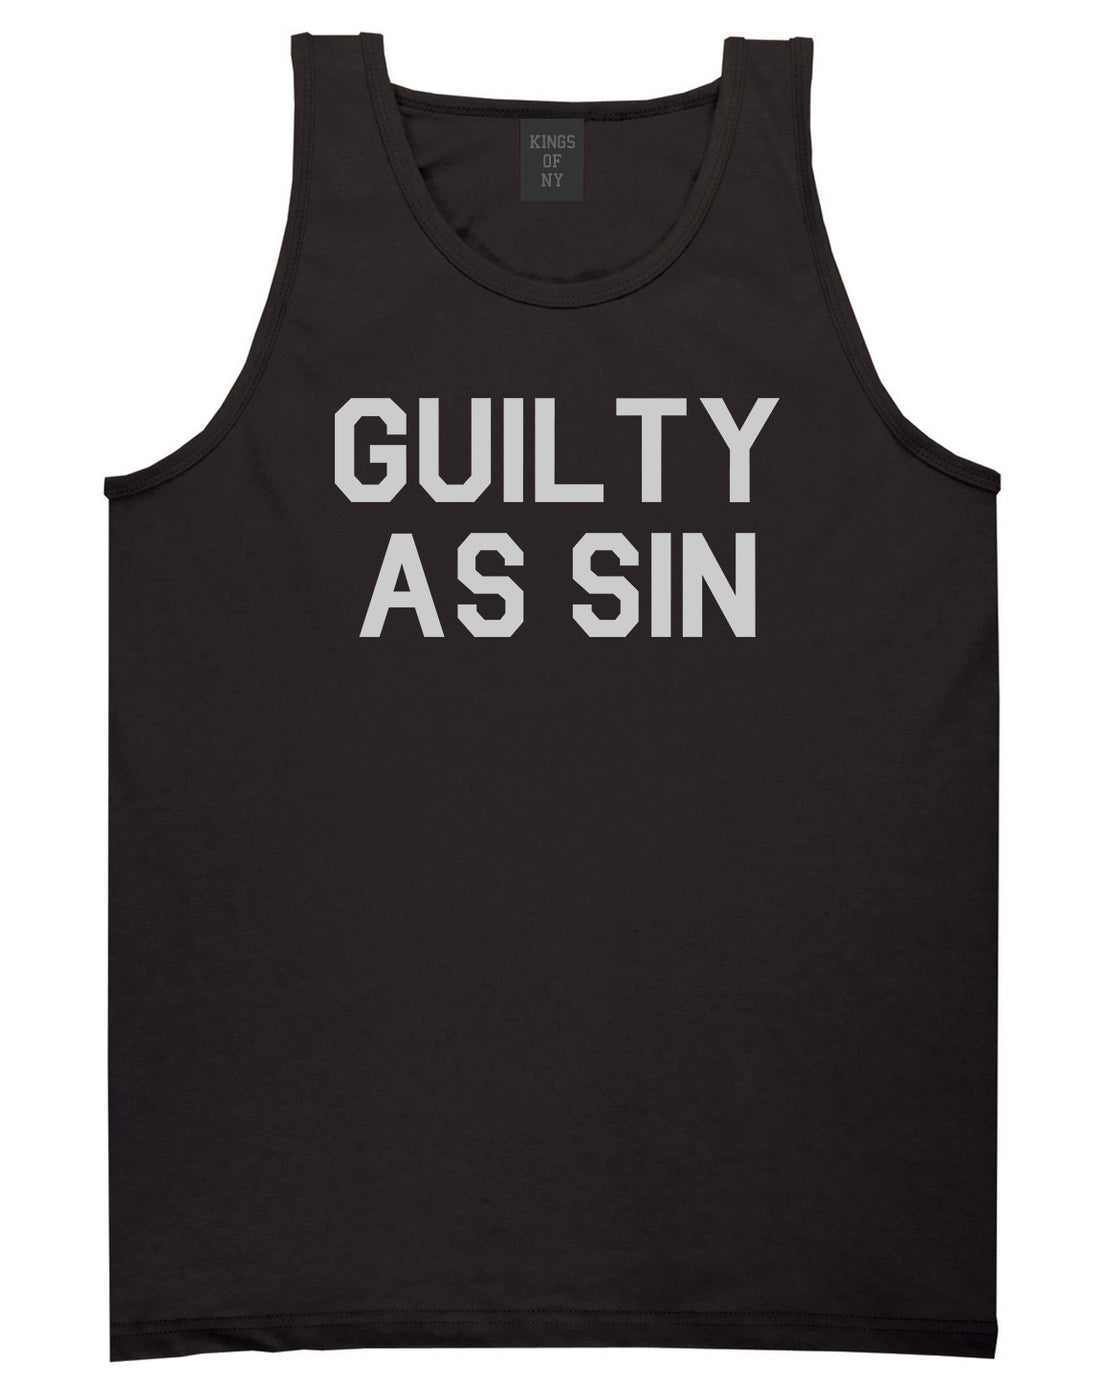 Guilty As Sin Mens Tank Top Shirt Black by Kings Of NY